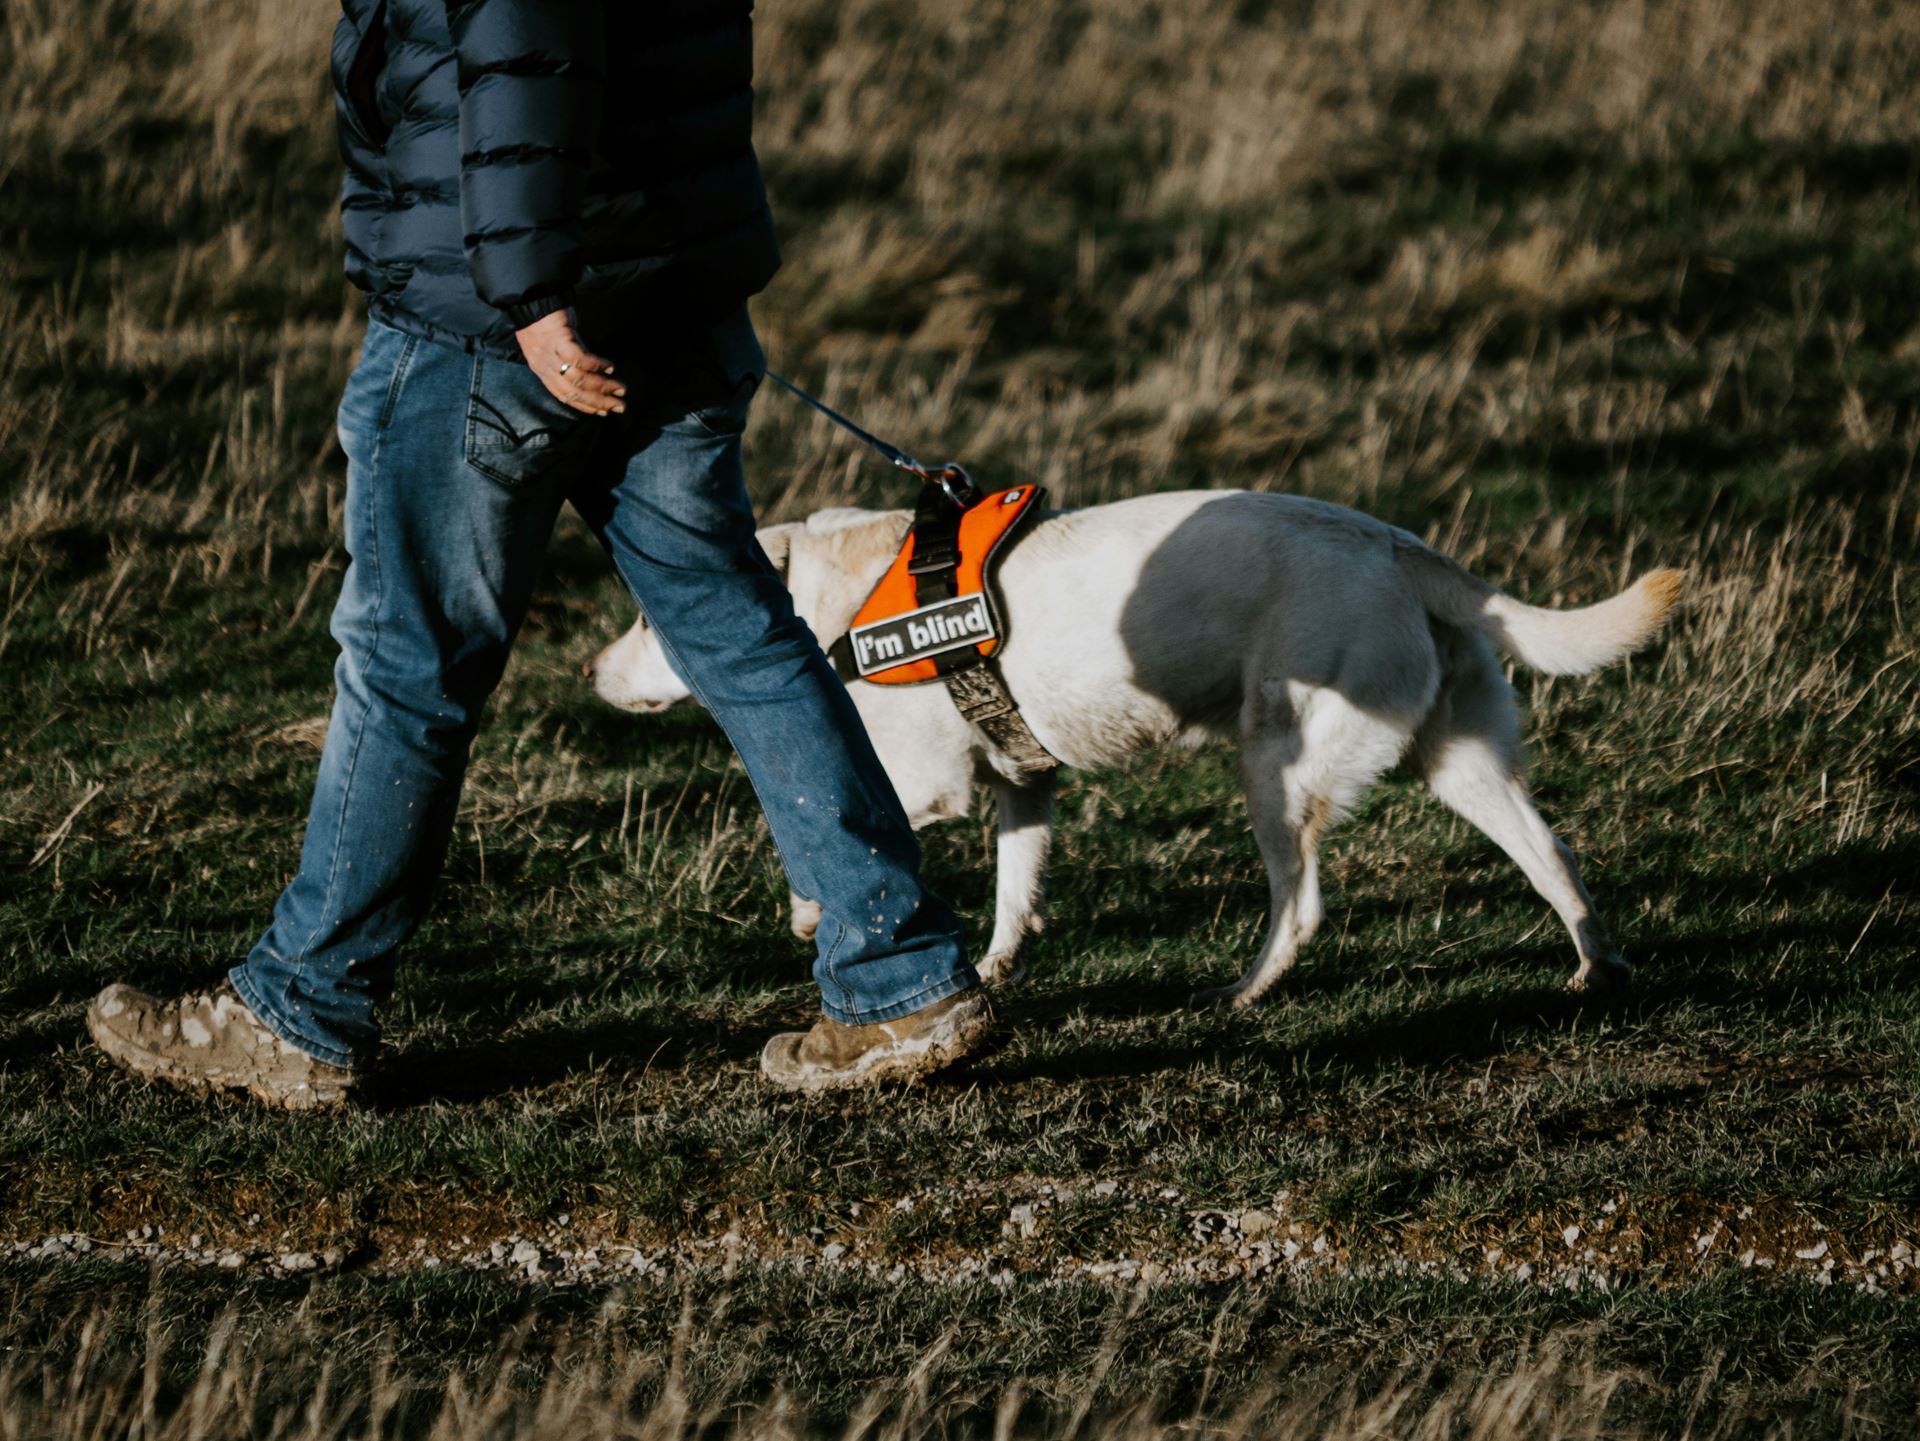 man walks alongside guide dog wearing an orange harness